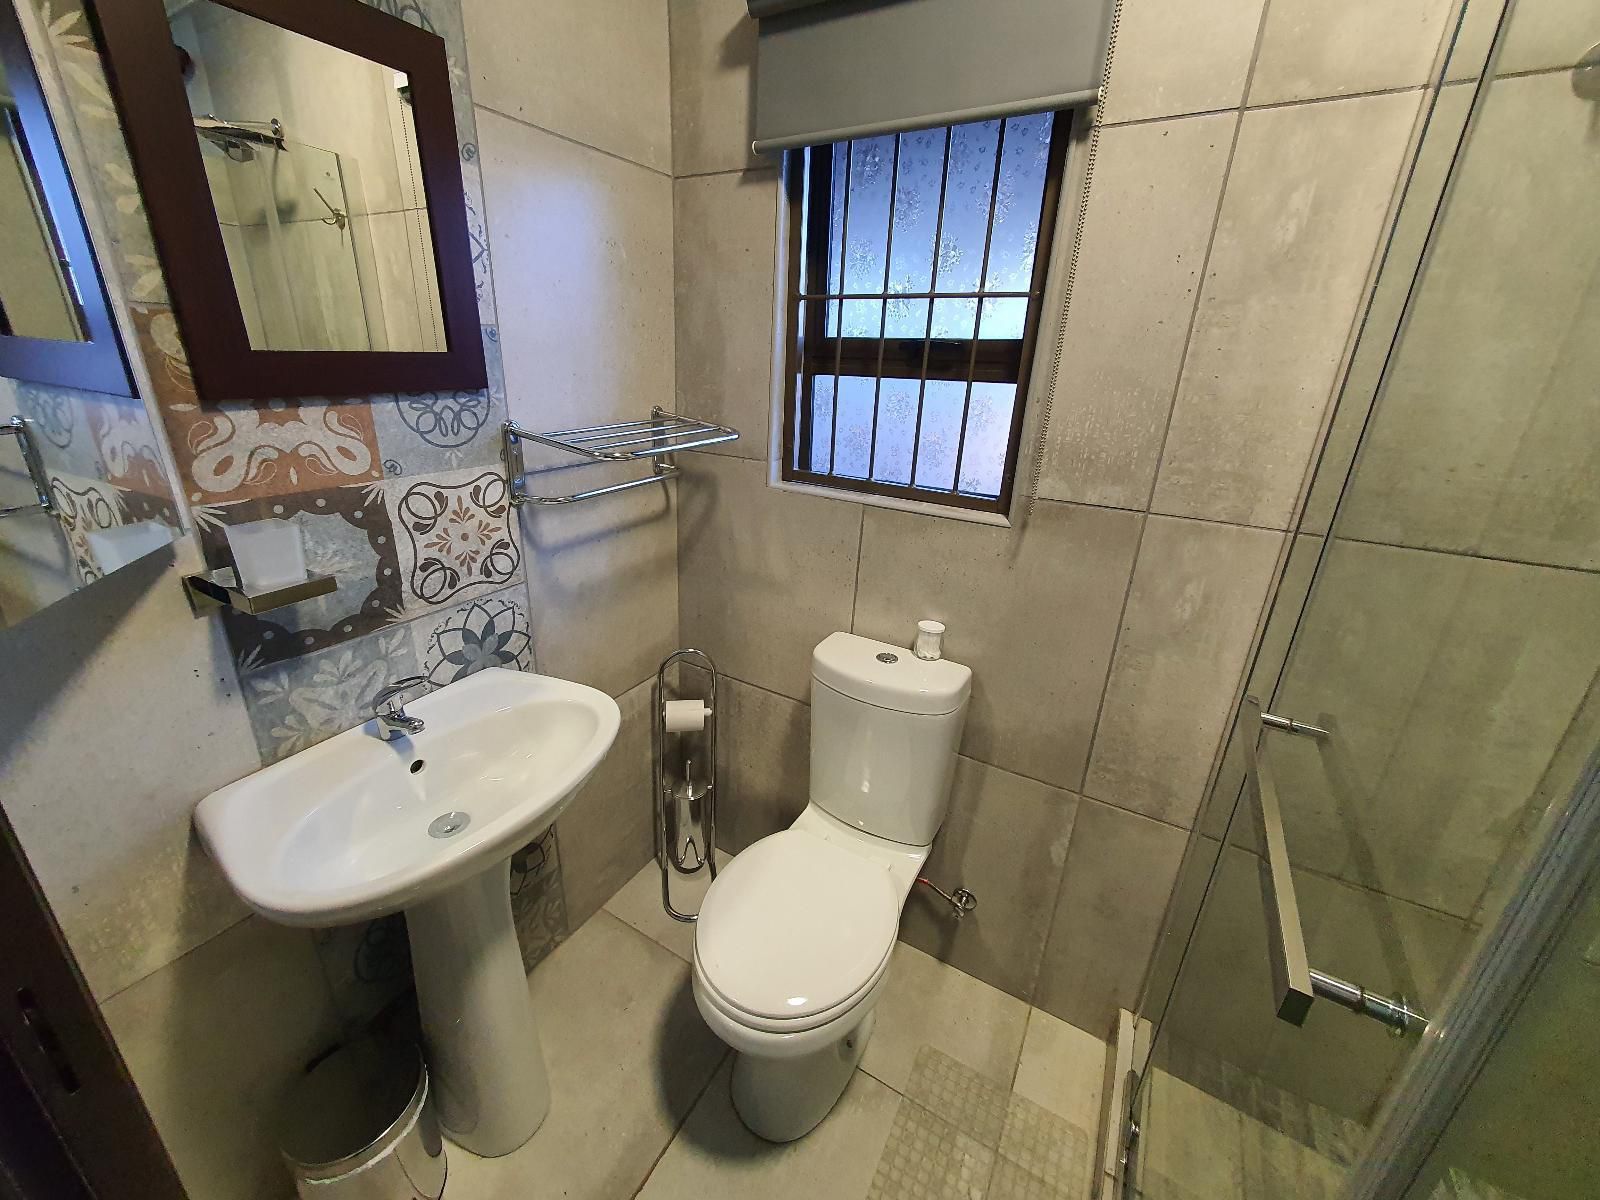 Rustic Forest Guest House Dan Pienaar Bloemfontein Free State South Africa Bathroom